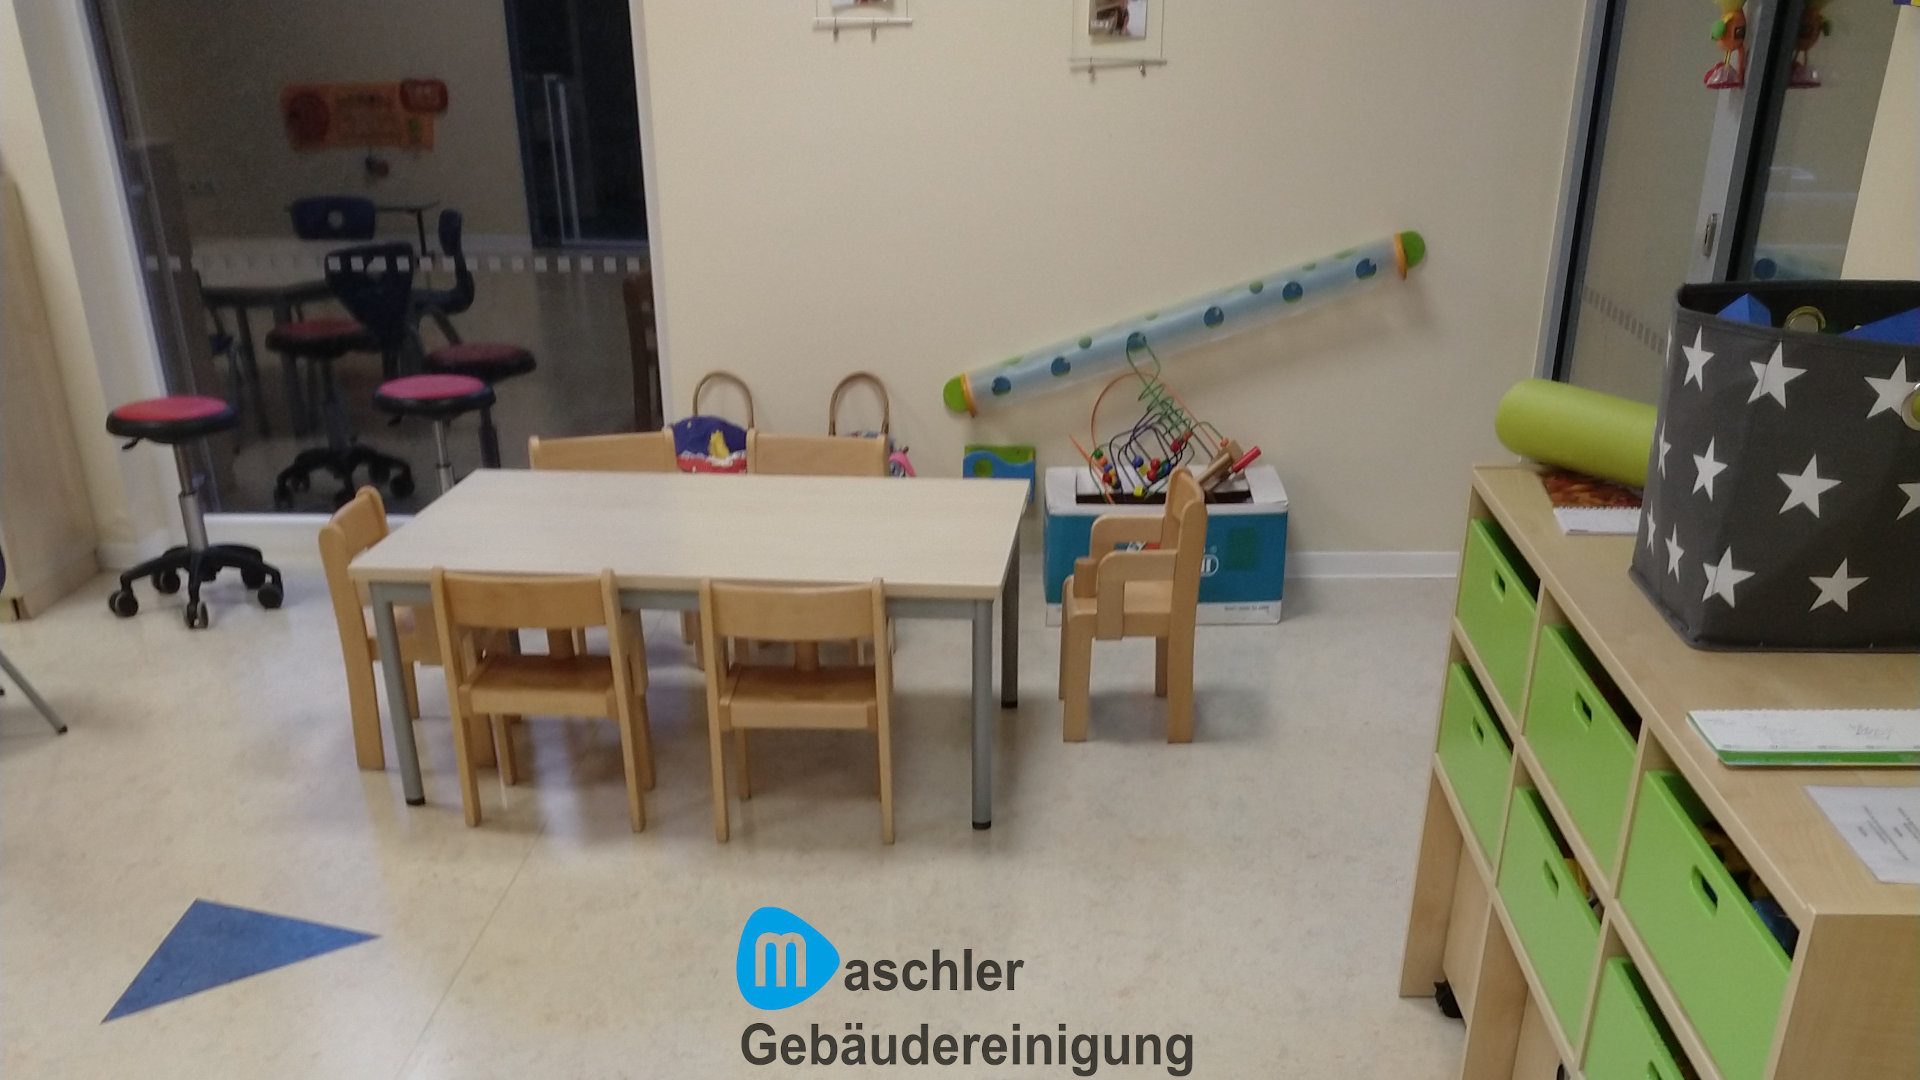 Kindergarten putzen - Gebäudereinigung Maschler Schwerin